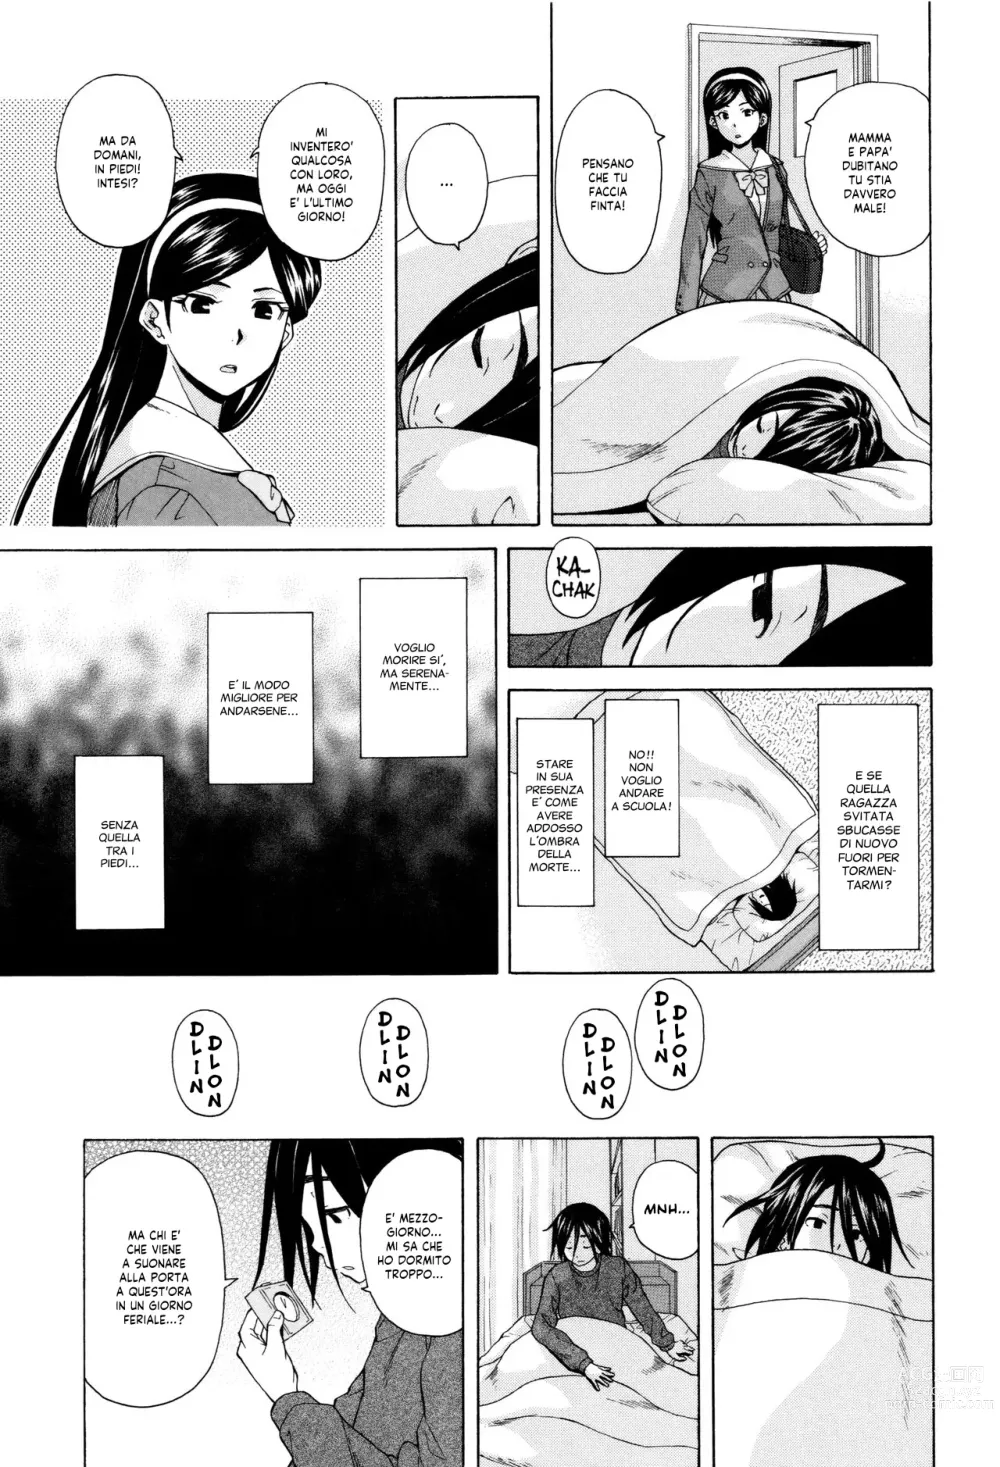 Page 16 of manga Segreti, Suicidi e Sorelle (decensored)